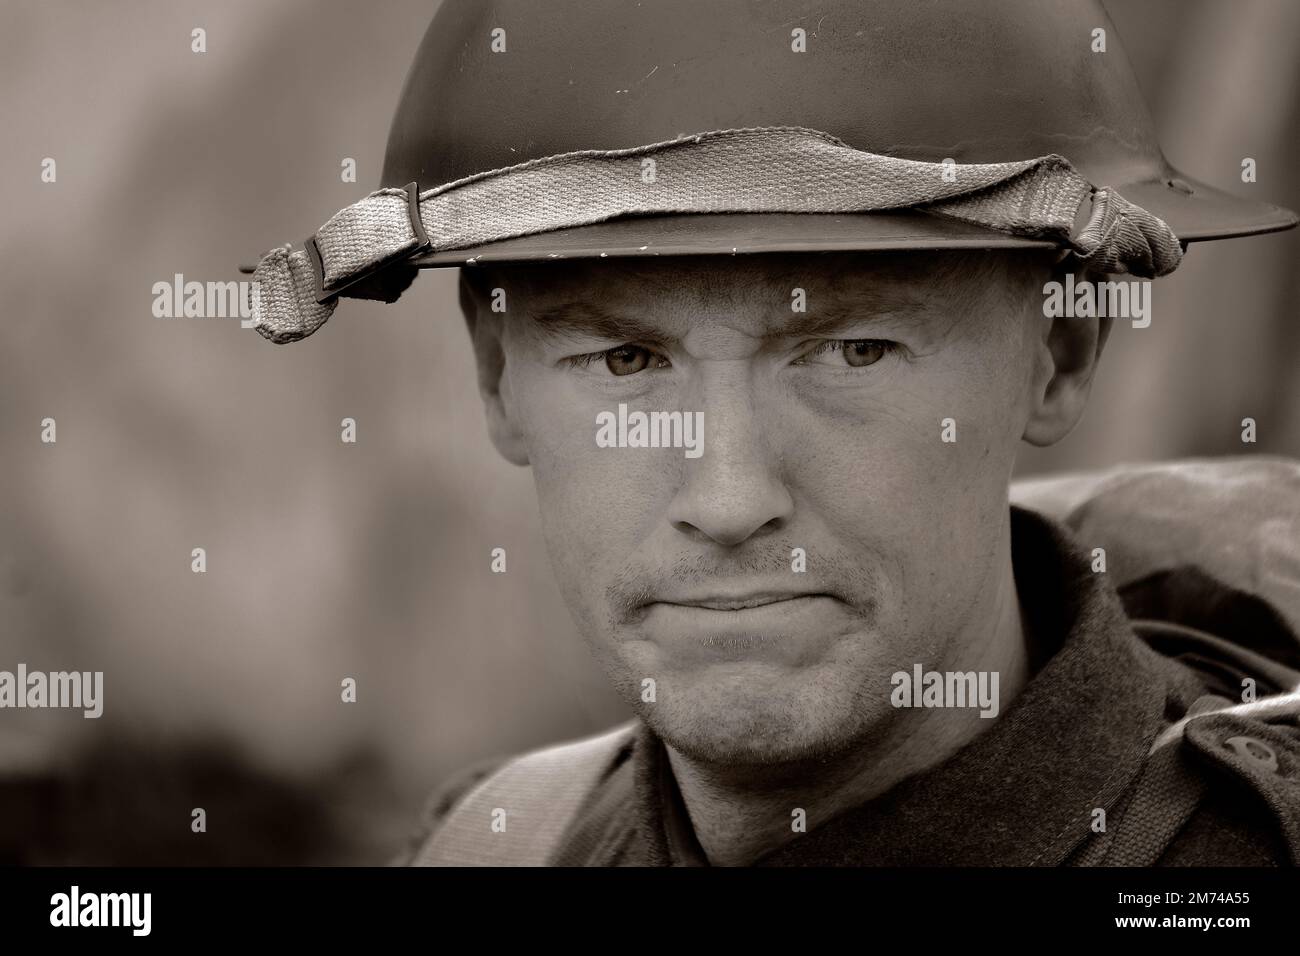 Schauspieler auf einer Militärshow, die Soldat der Weltkriege darstellt. Stockfoto